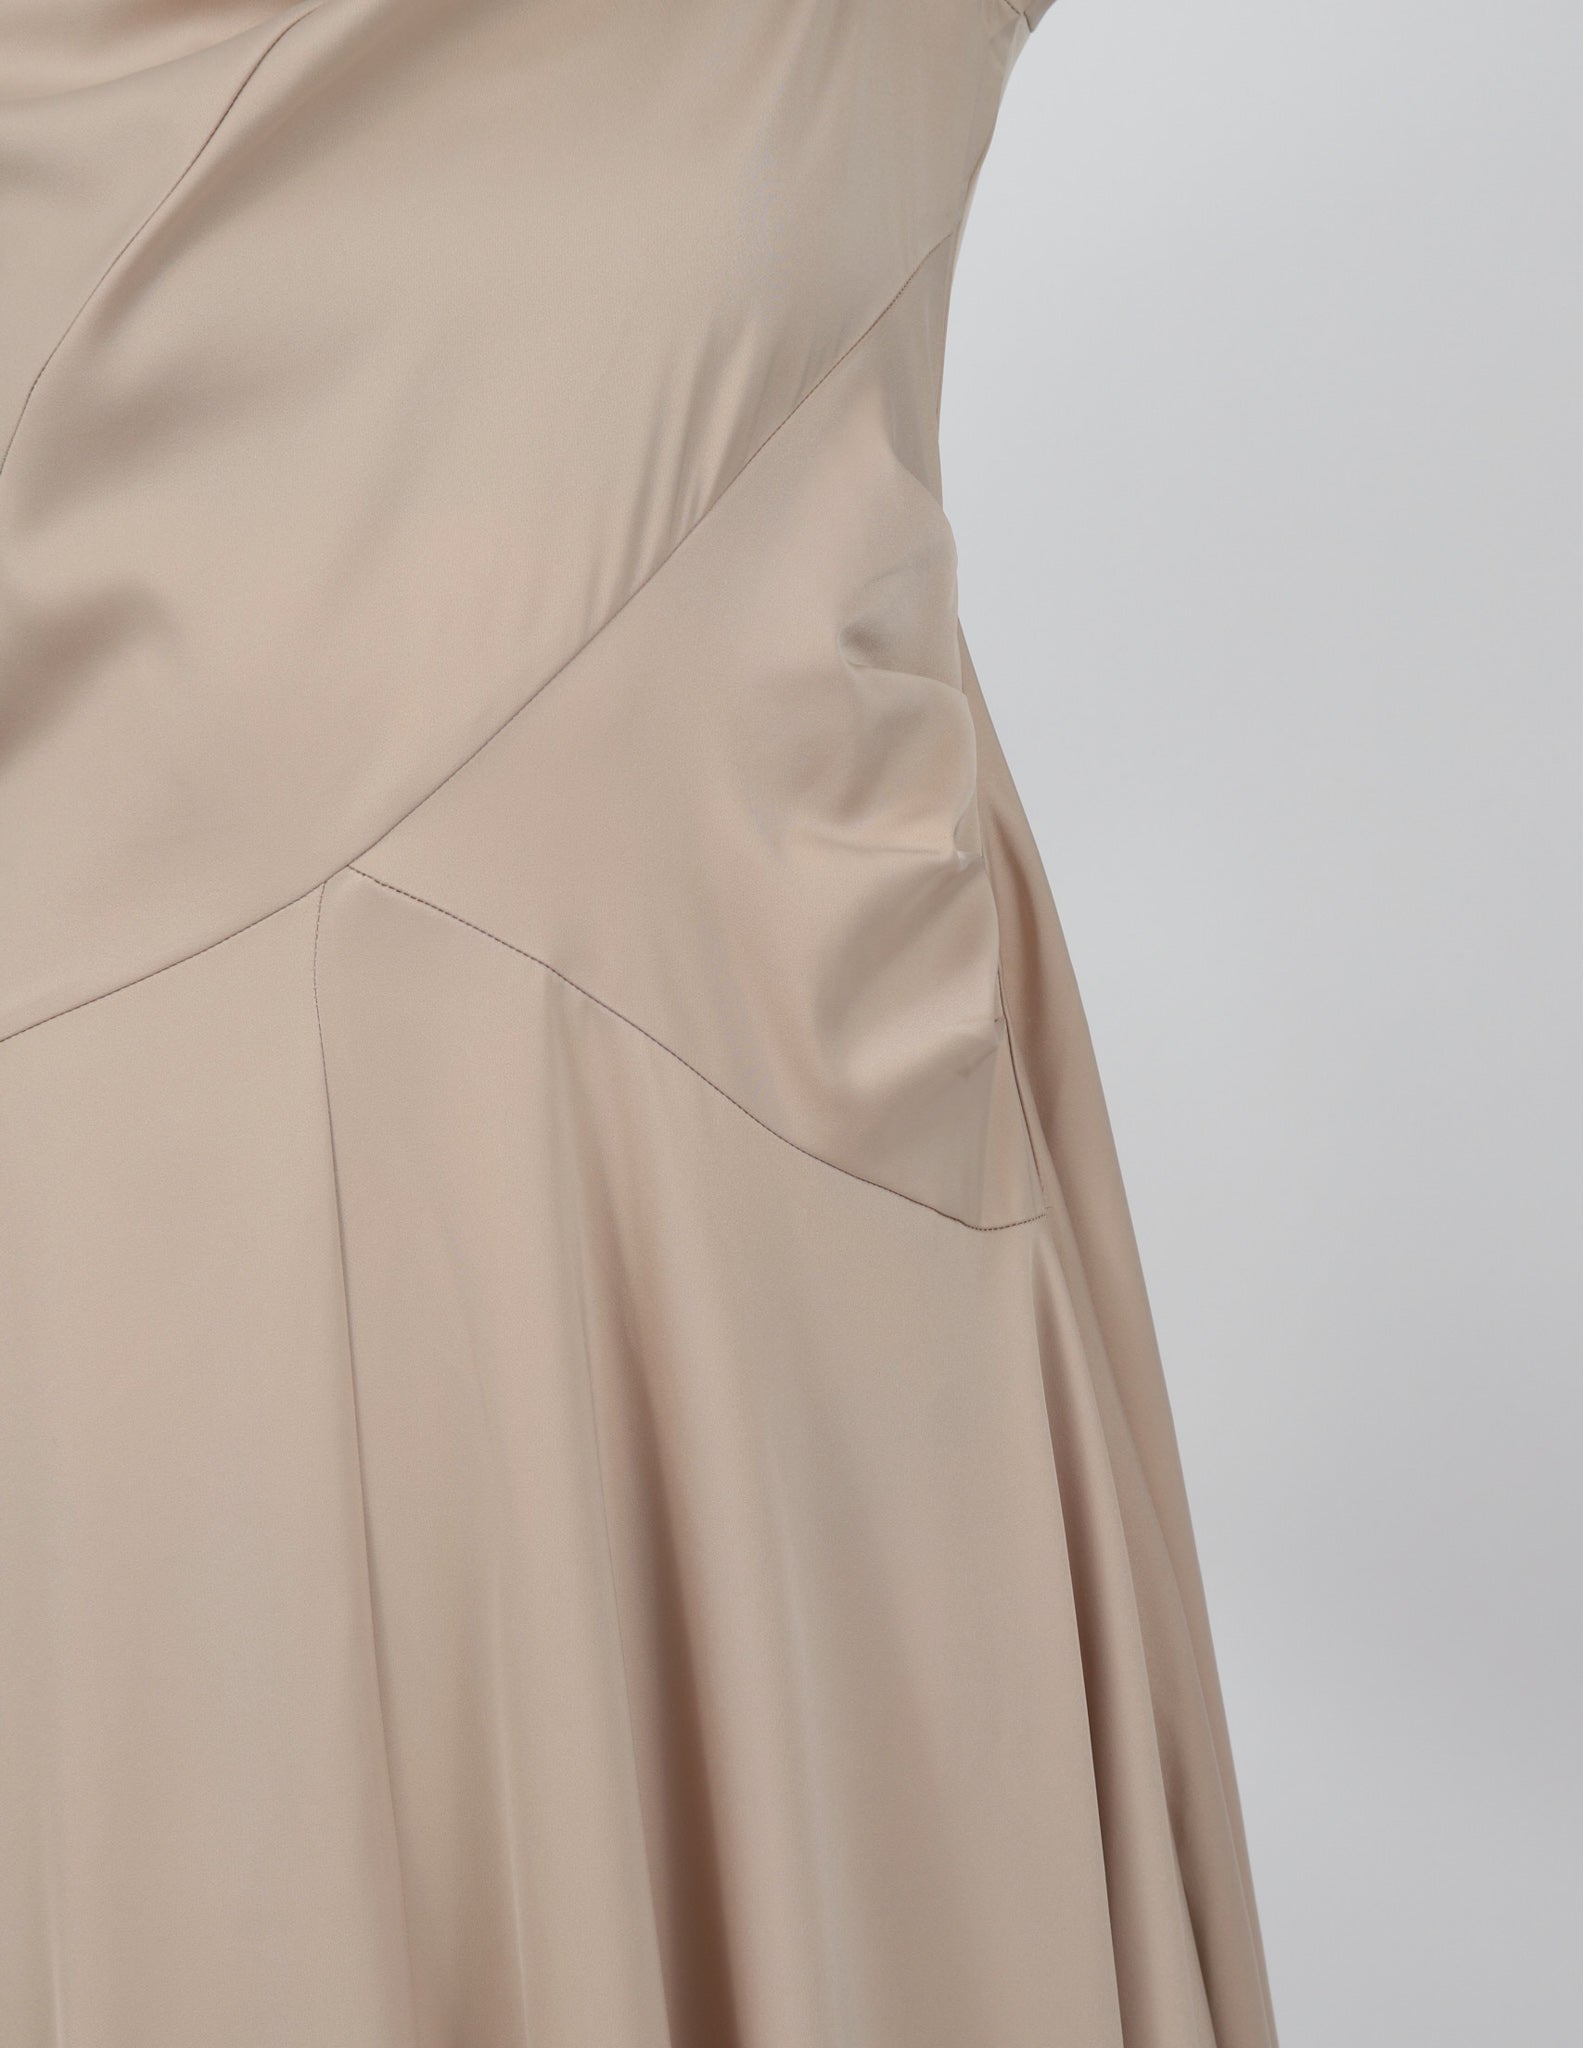 M7790Black-dress-abaya